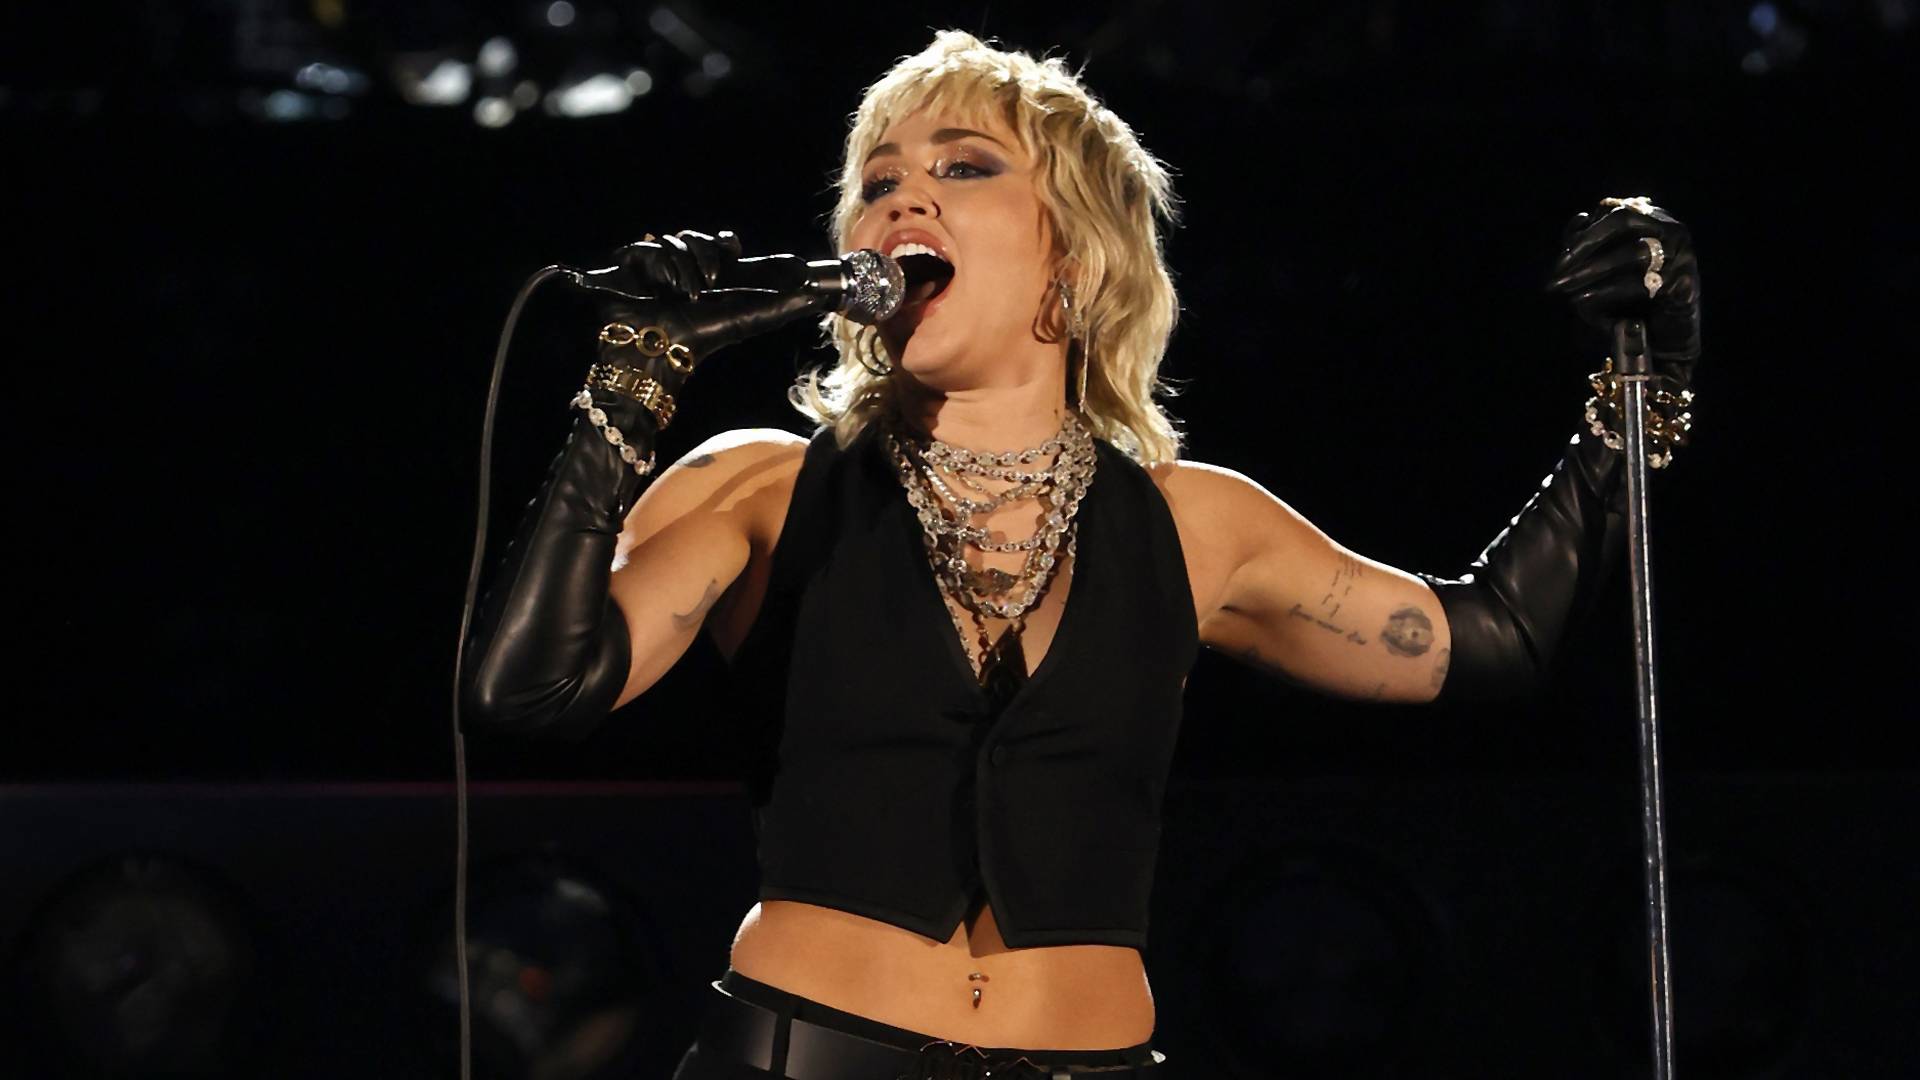 Így vált a cuki Hannah Montana őrült lázadóvá, majd rocksztárrá: 30 éves Miley Cyrus